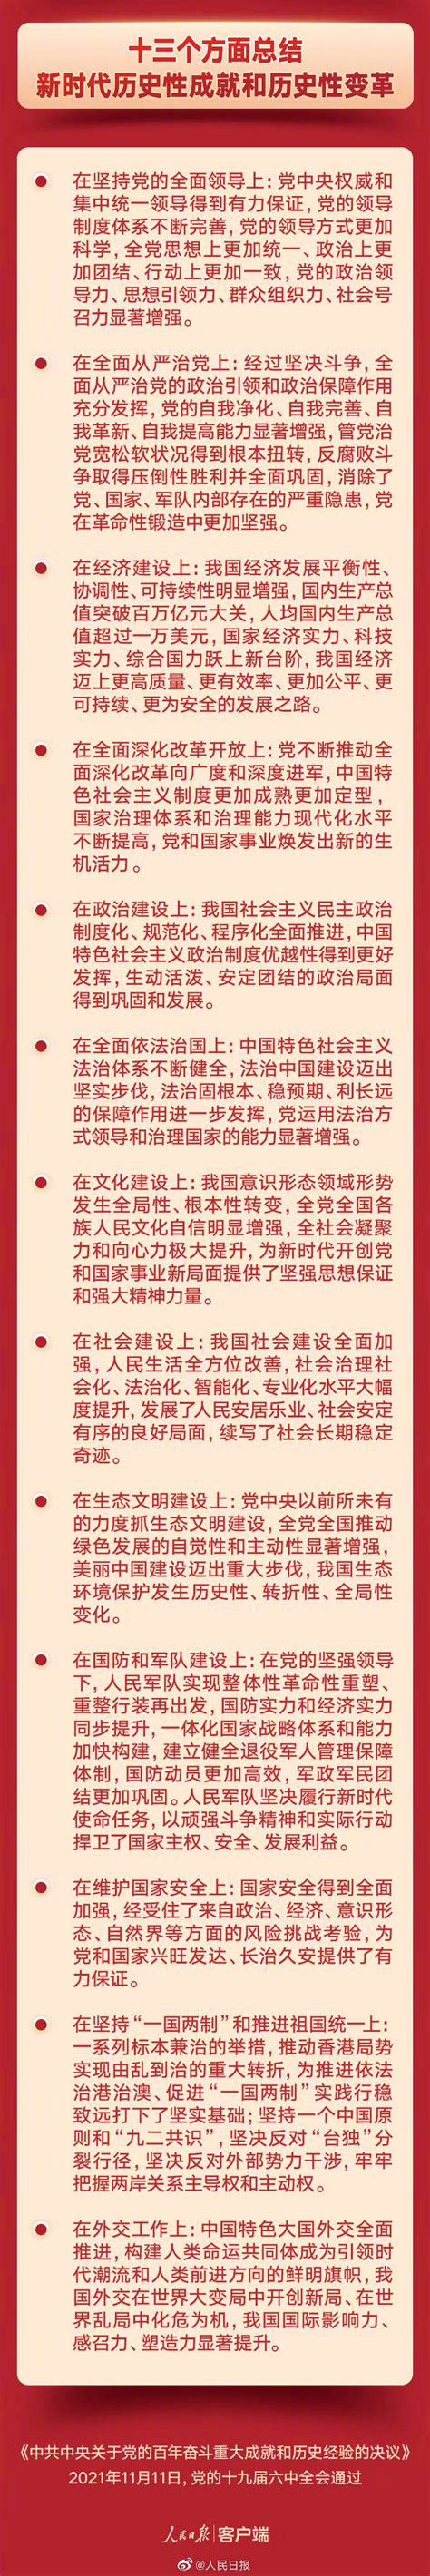 【奋进这5年 精彩看湖南】党的十八大以来湖南水利改革发展成就纪实 - 要闻 - 湖南在线 - 华声在线